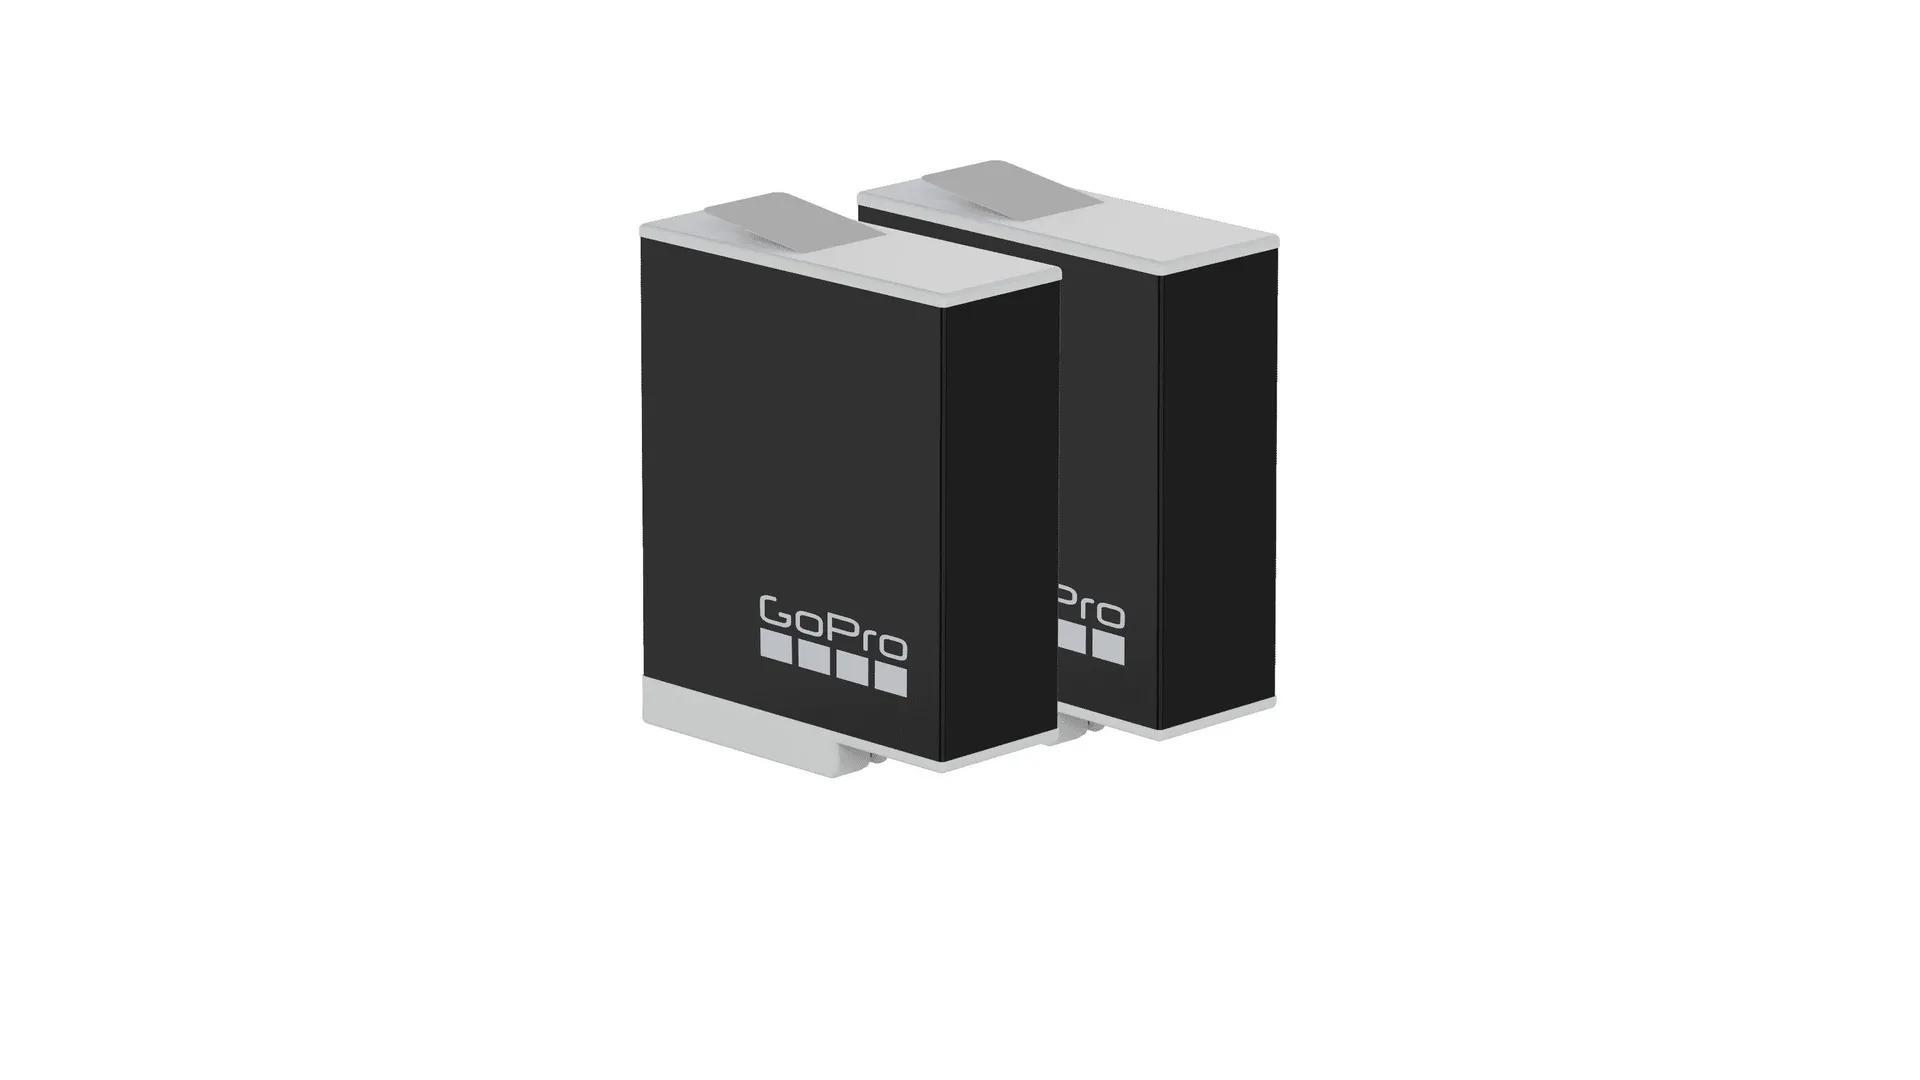 Kit de 2 baterías recargables Enduro